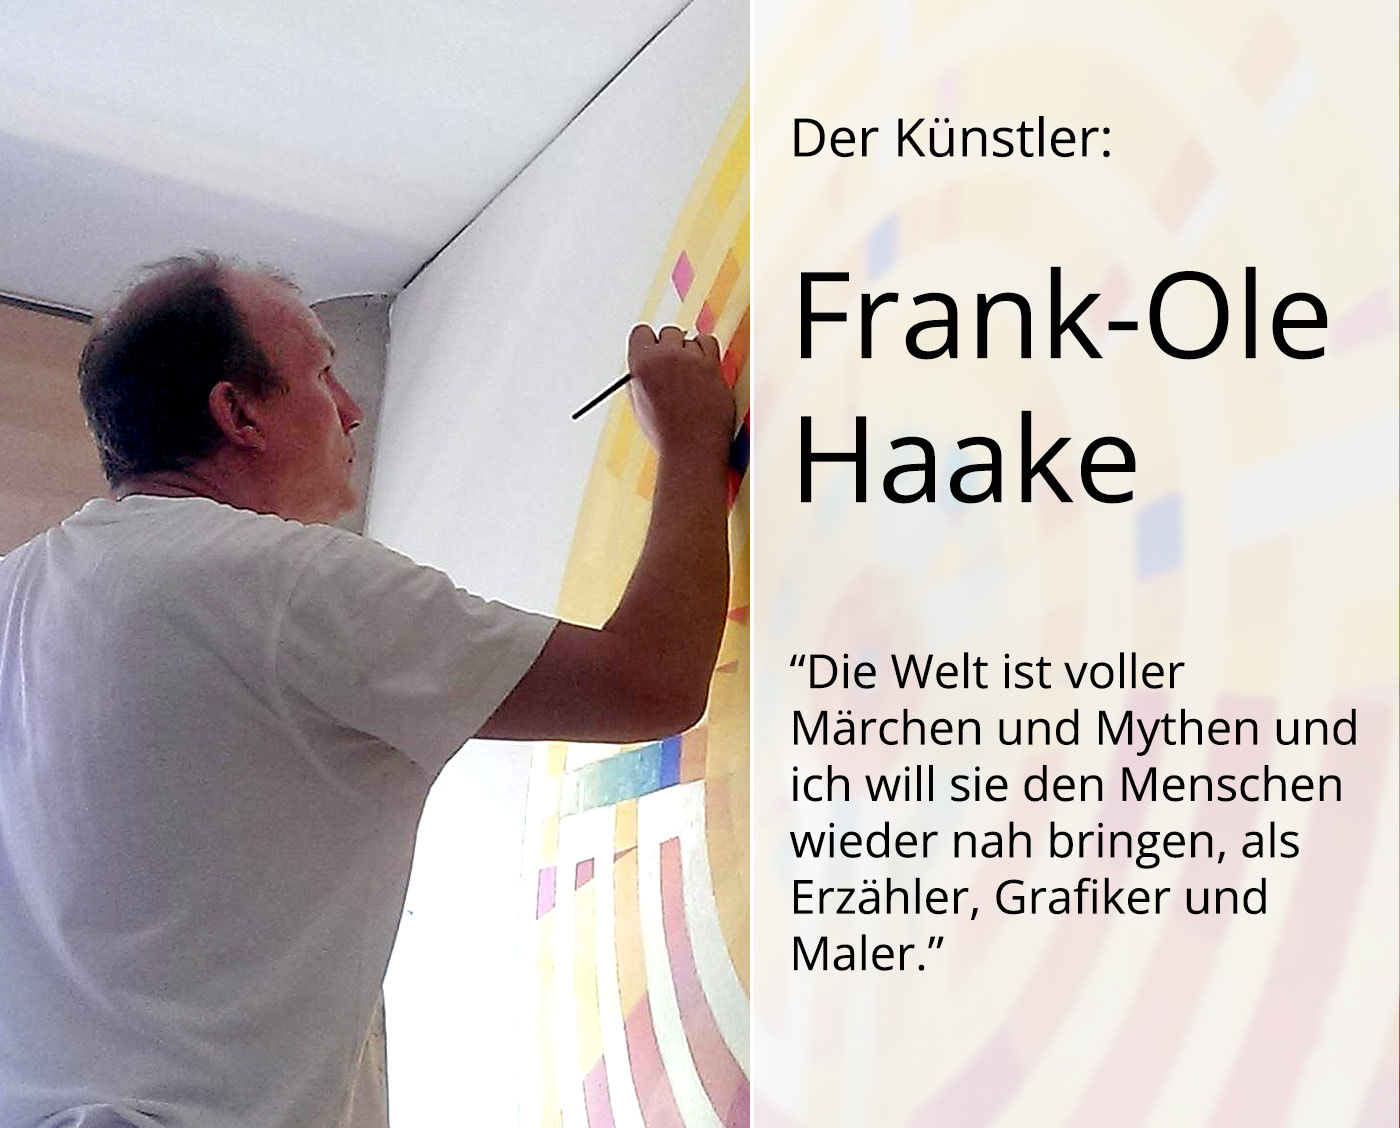 Grafik (serielles Unikat), mehrfarbiger Linoldruck von Frank-Ole Haake: "Der Seiltänzer"